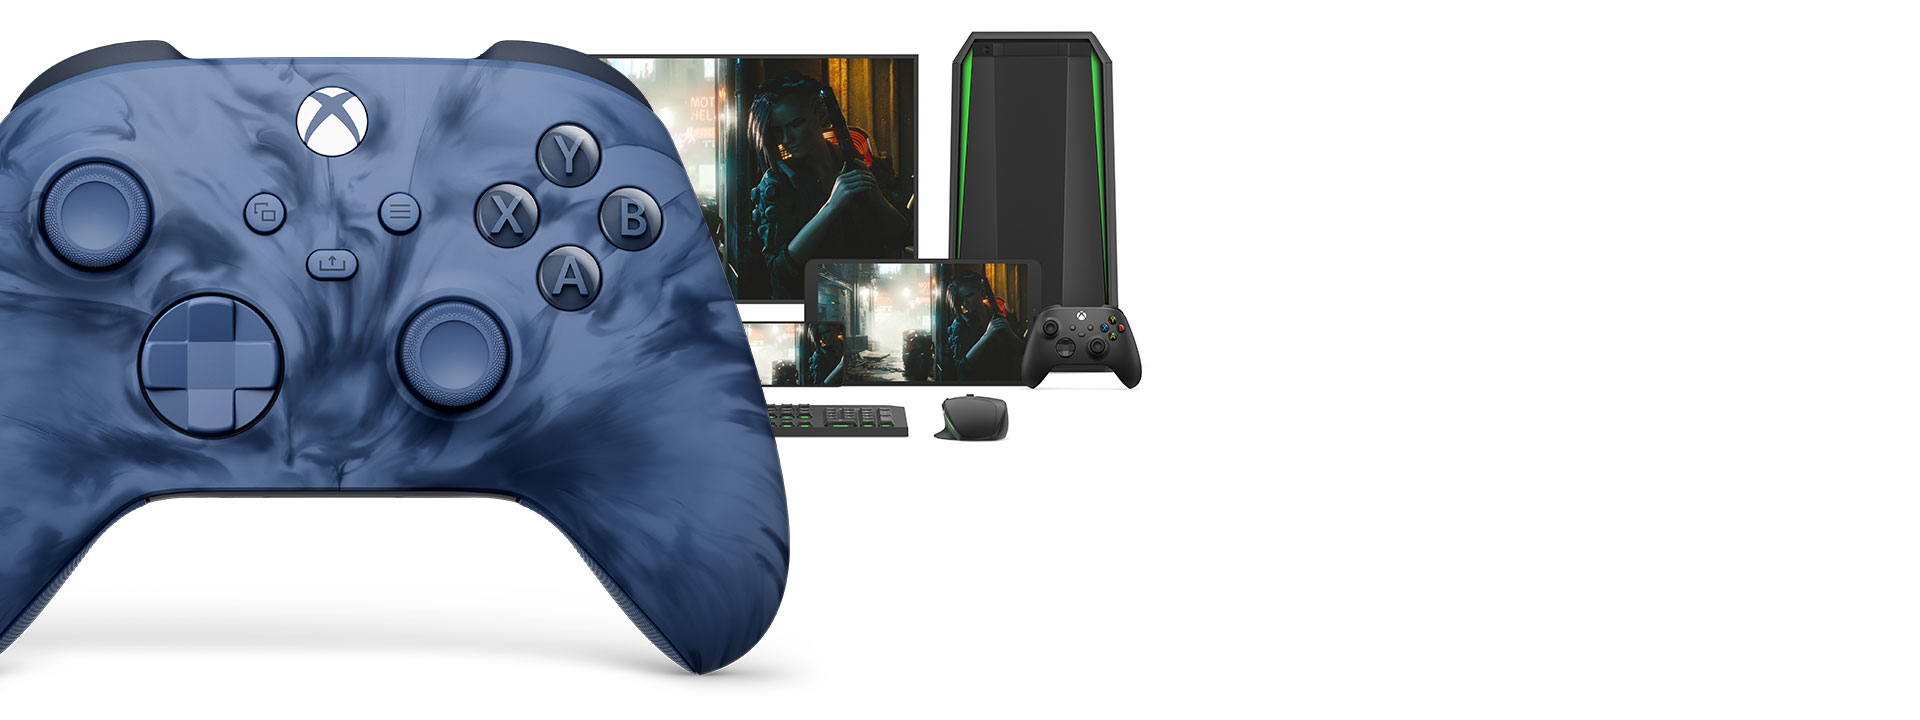 A Stormcloud Vapor Special Edition vezeték nélküli Xbox-kontroller jobb oldalának elülső nézete, mögötte különféle játszható platformokkal